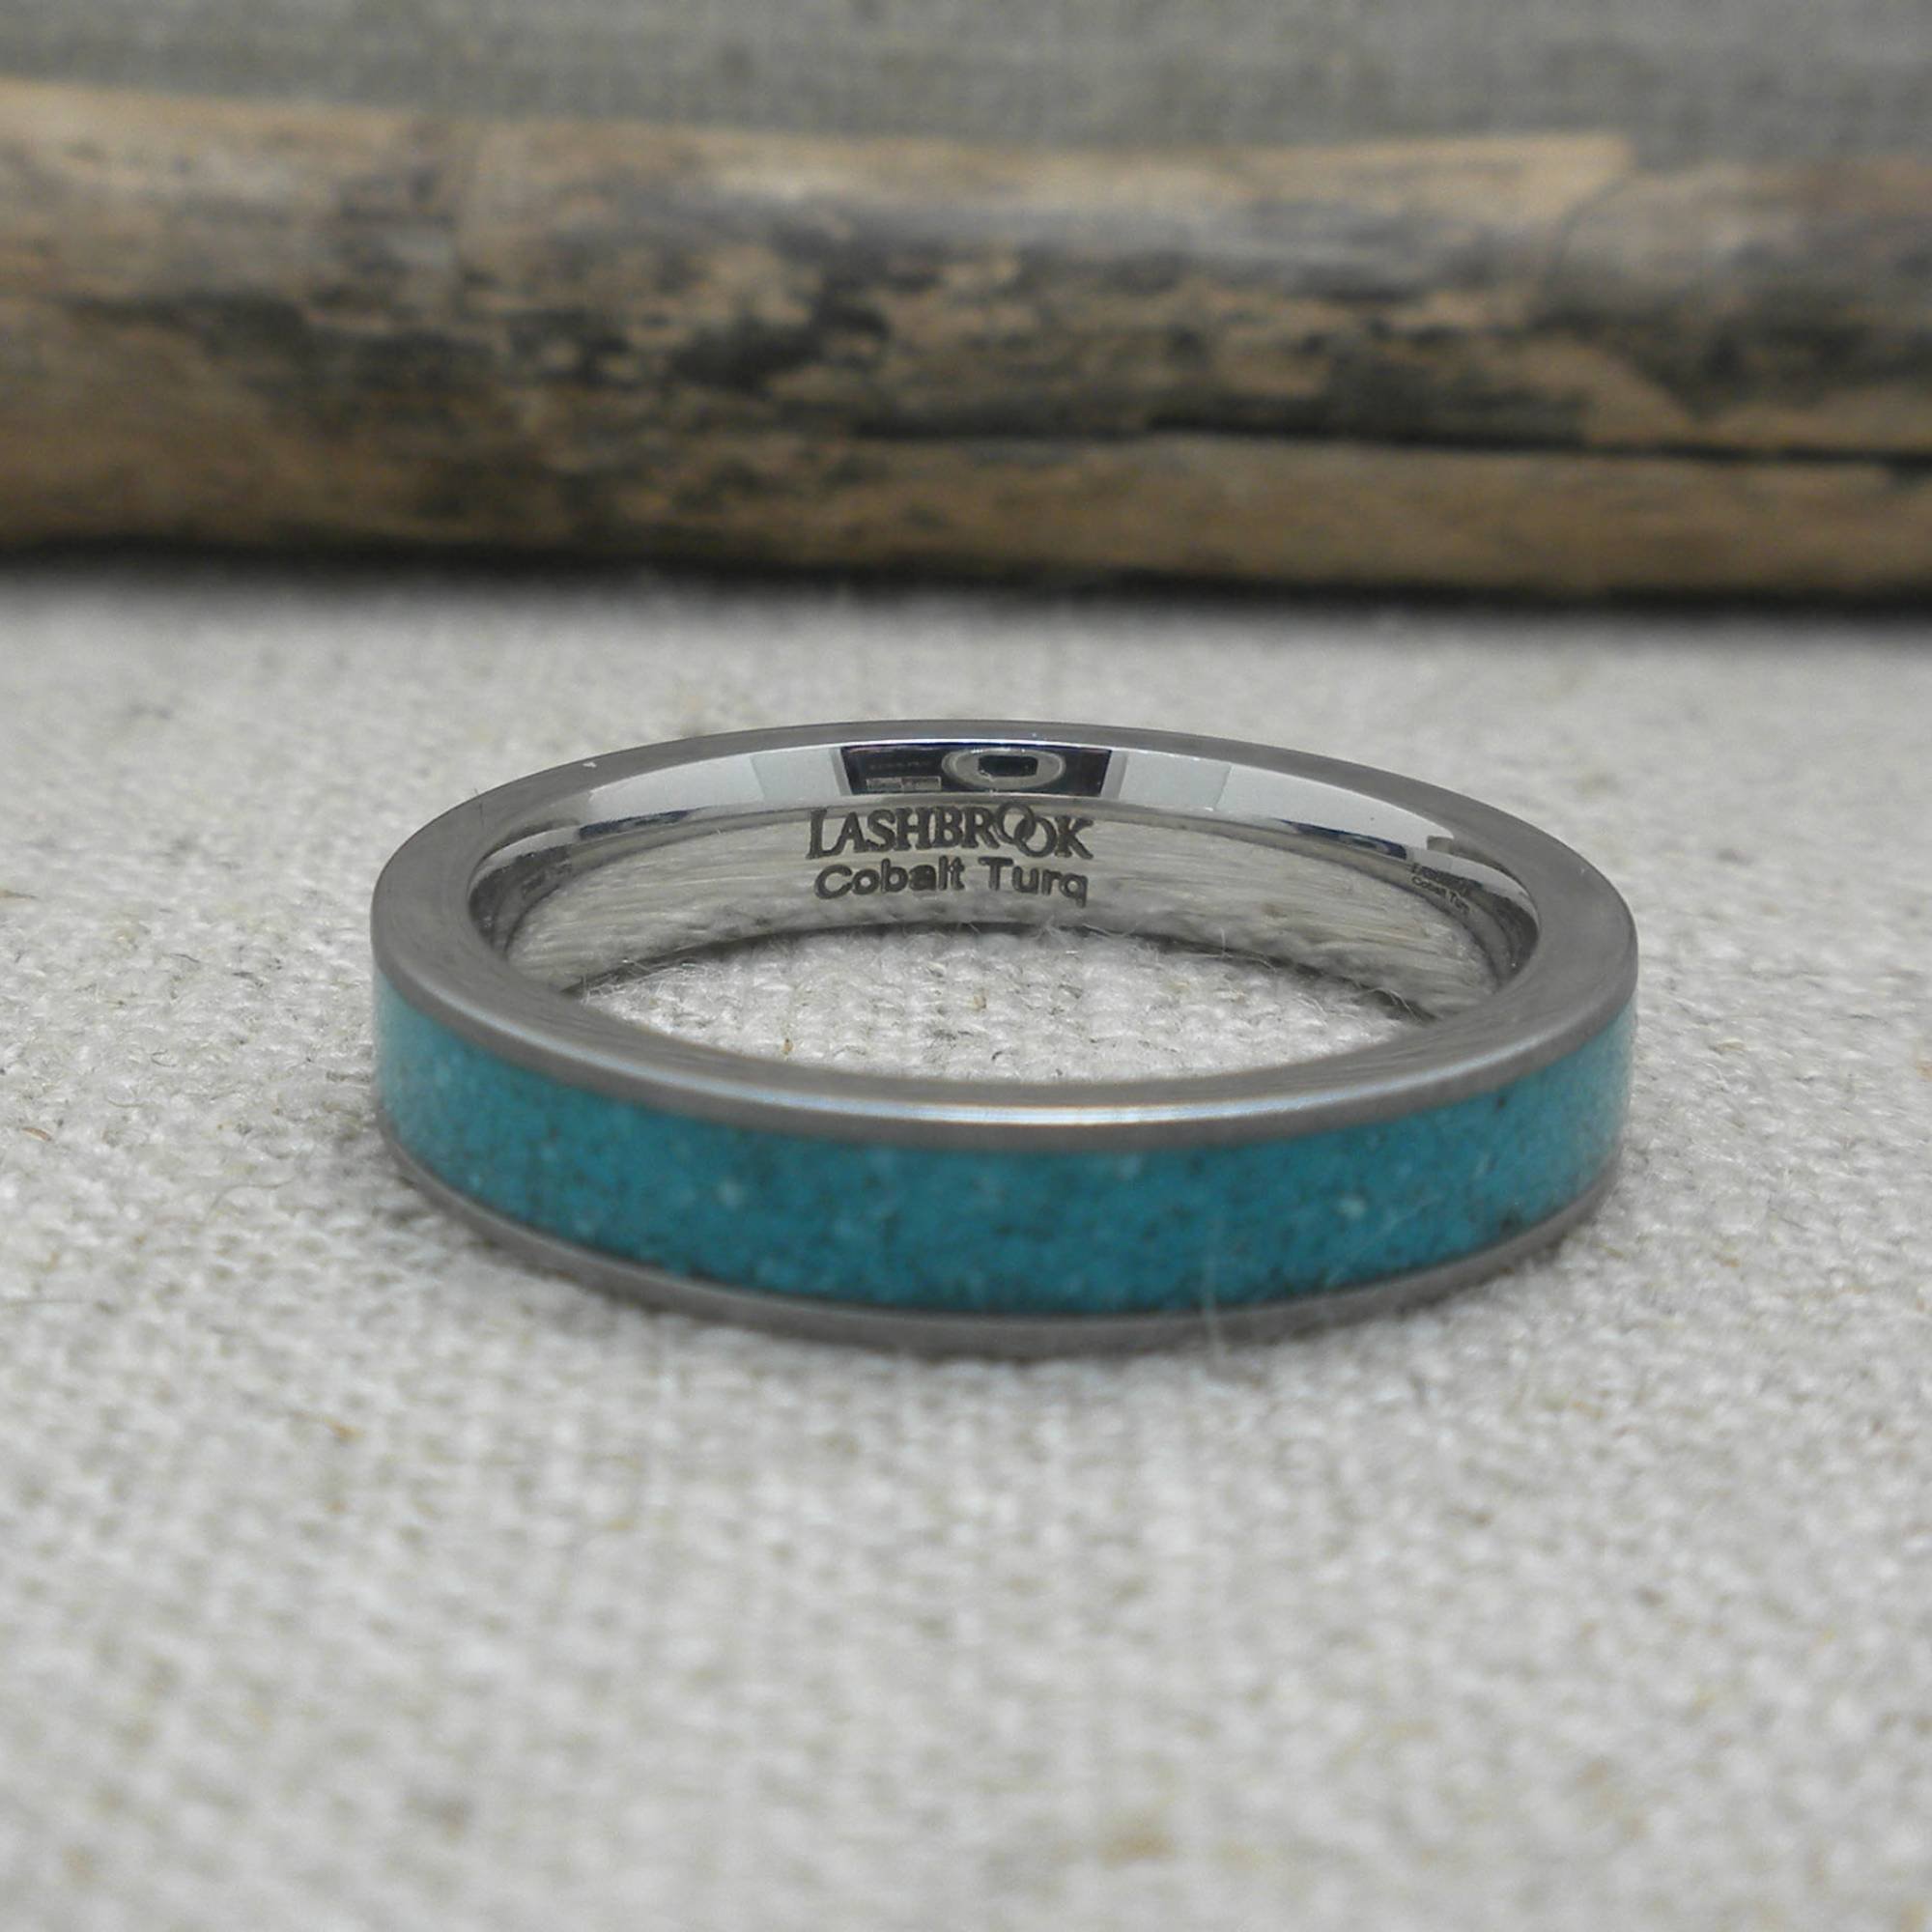 Lashbrook Design Cobalt Chrome Wedding ring